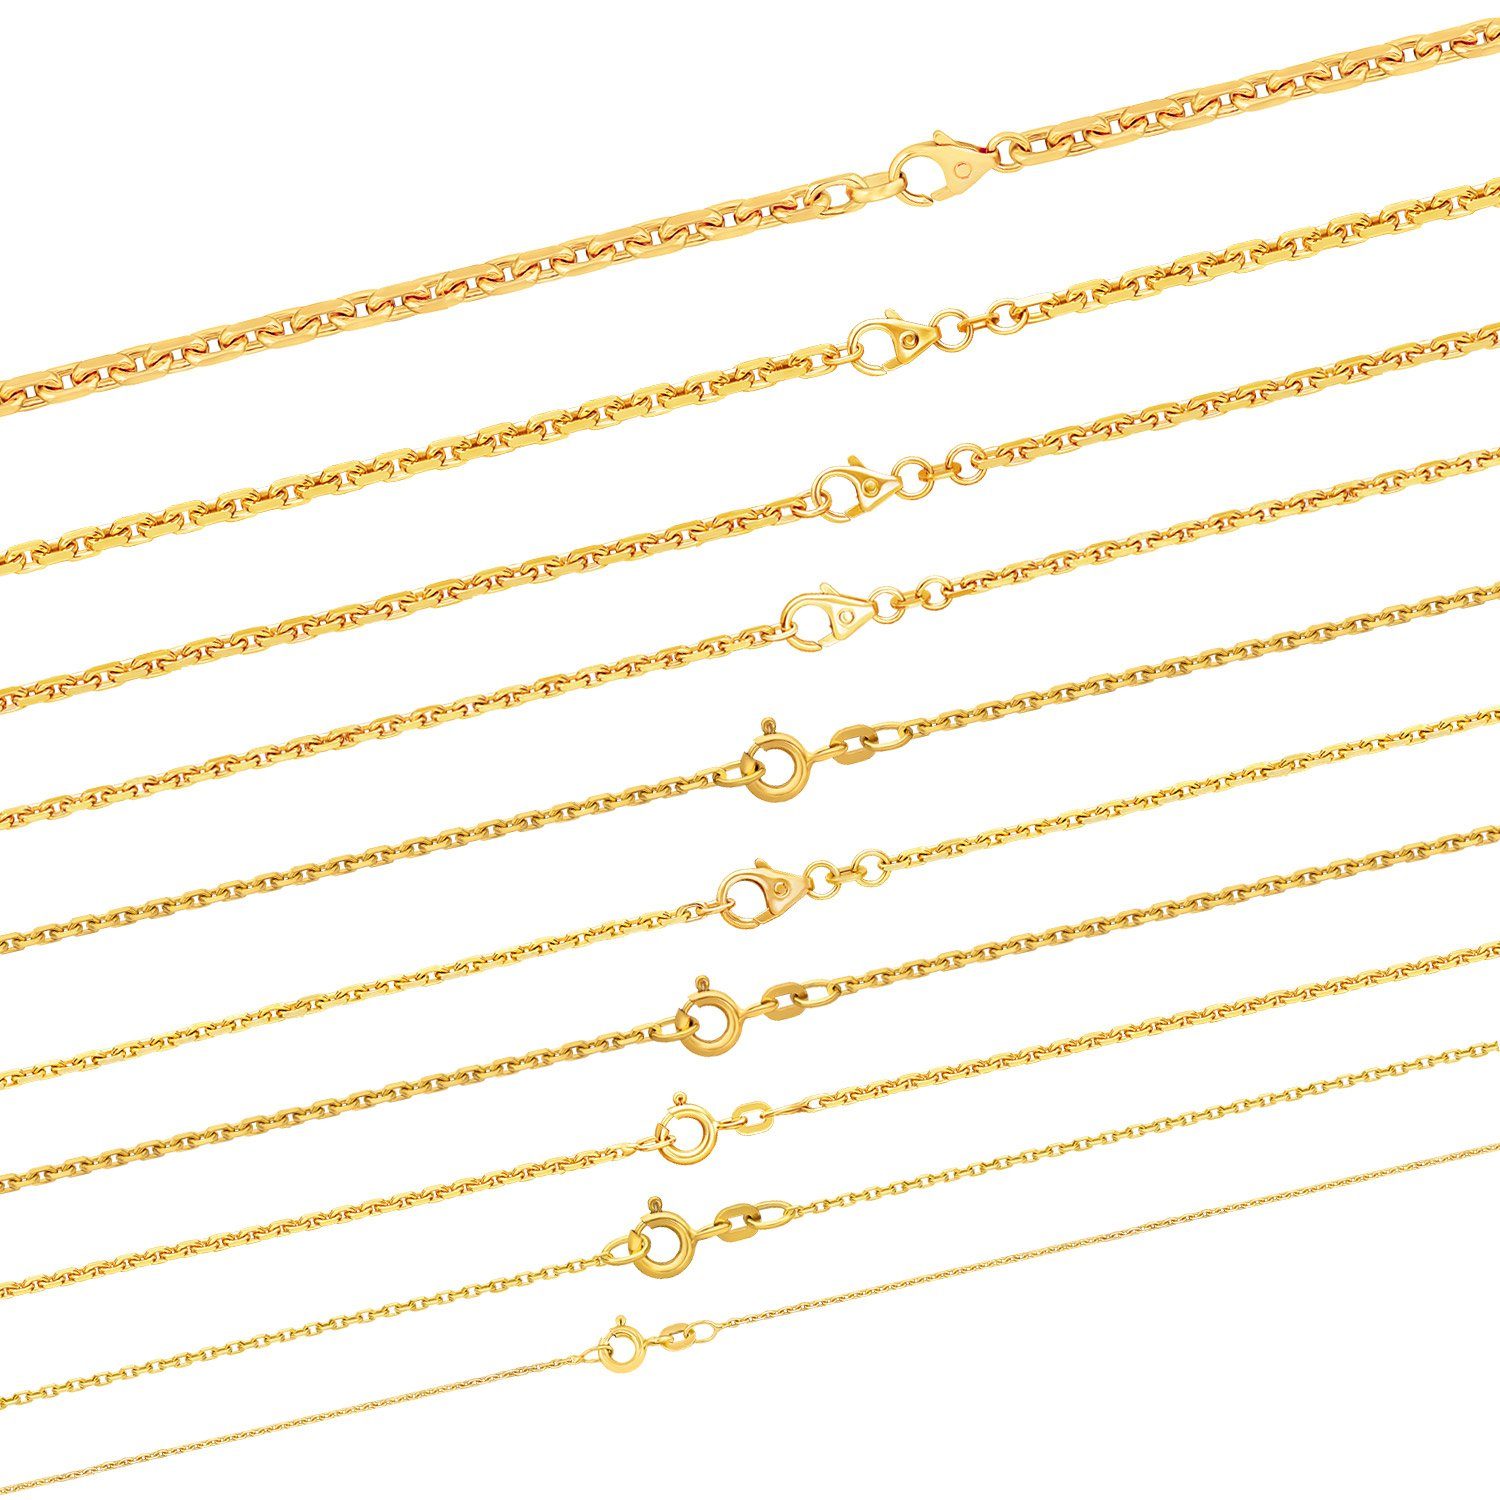 HOPLO Goldkette Ankerkette diamantiert Länge 38cm - Breite 1,7mm - 750-18 Karat Gold, Made in Germany